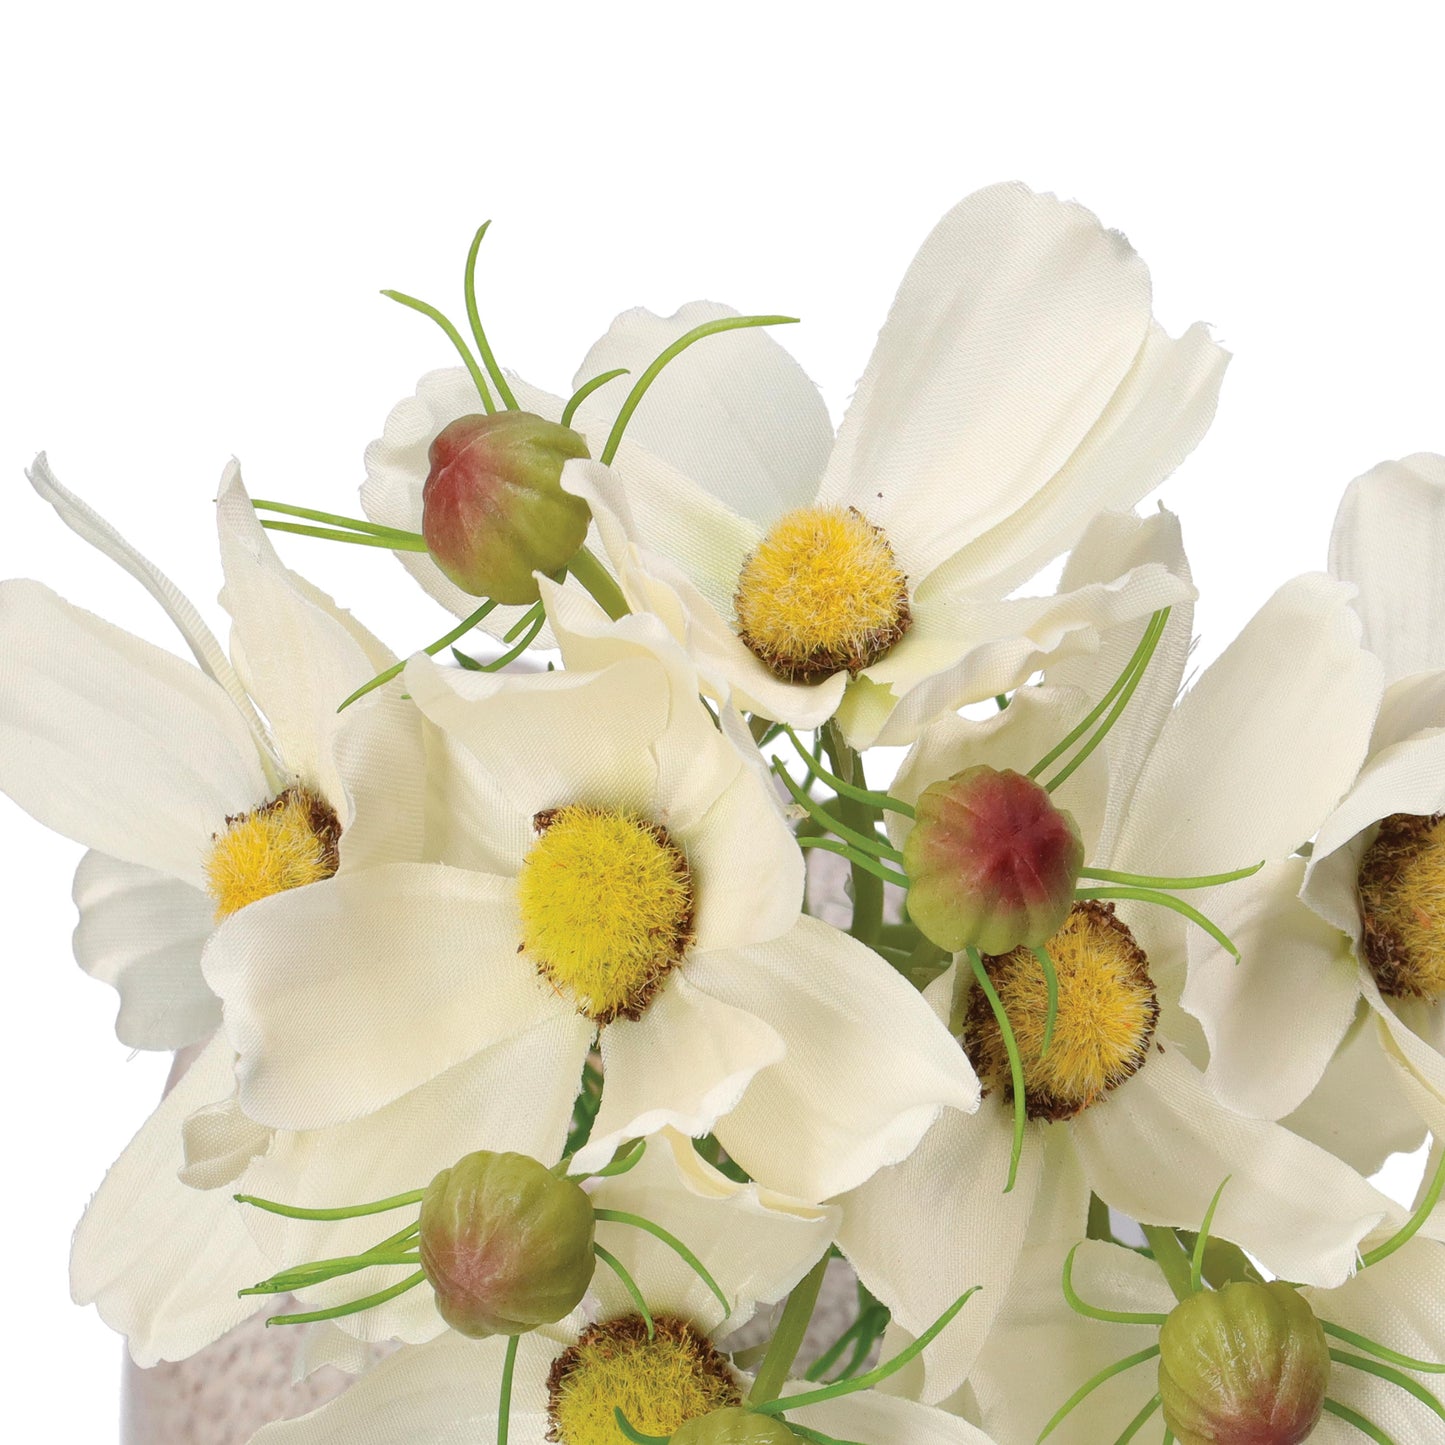 Mazzetto di fiori Cosmos bianchi artificiali, petali in tessuto steli in plastica. Dimensioni: altezza cm 26. In negozio e online su tuttochic.it